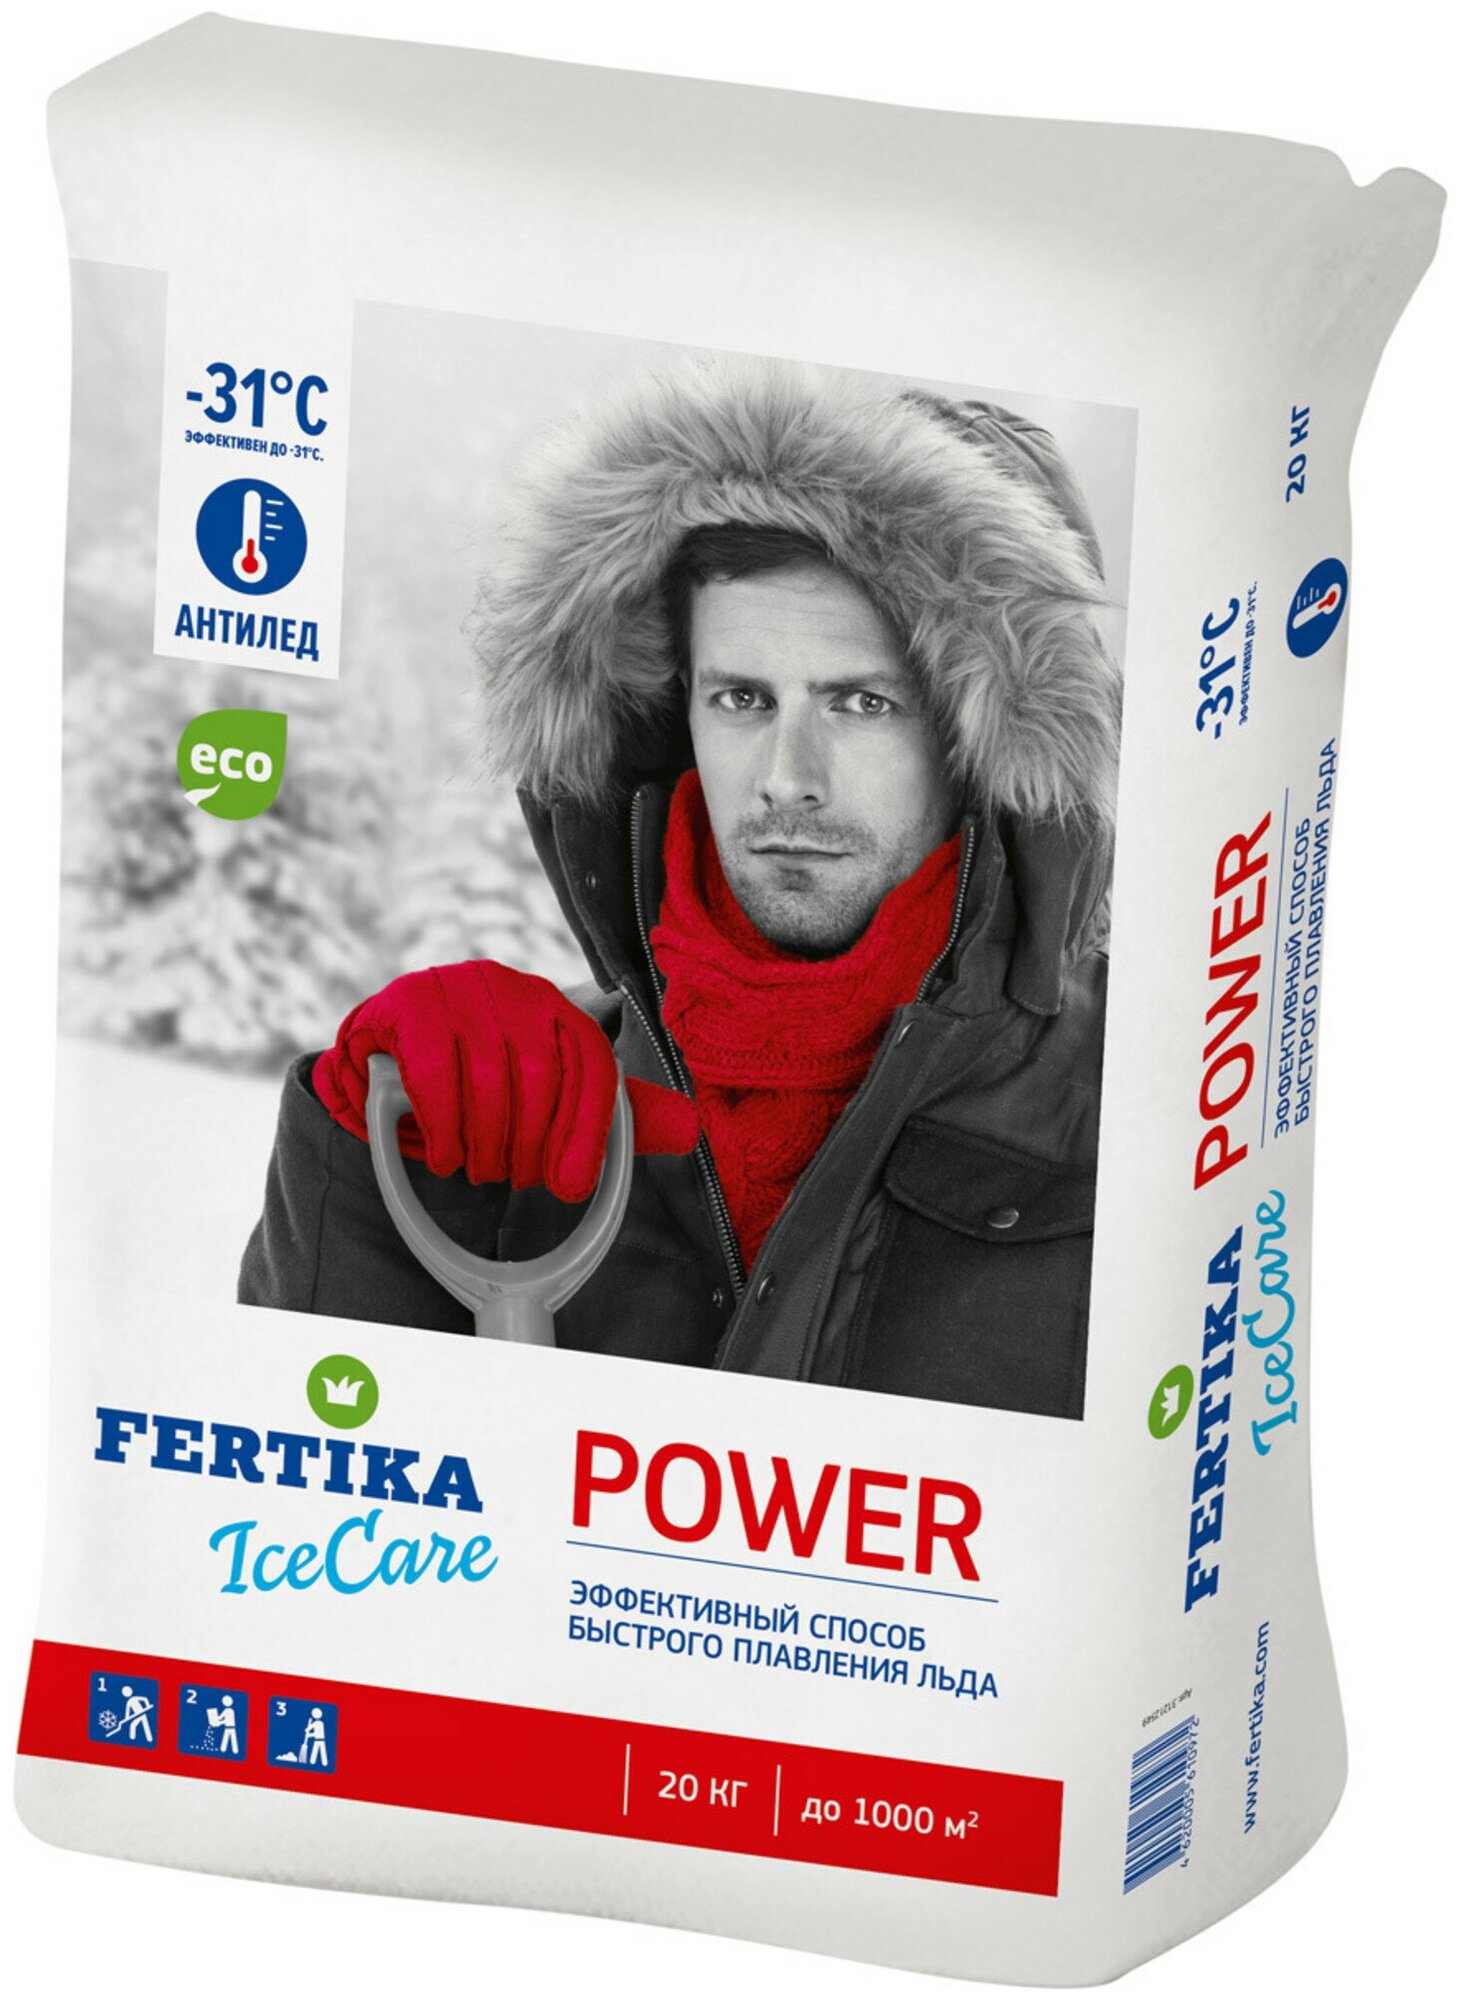 Противогололёдное средство Фертика (Fertika) Ice Care Power, 20 кг